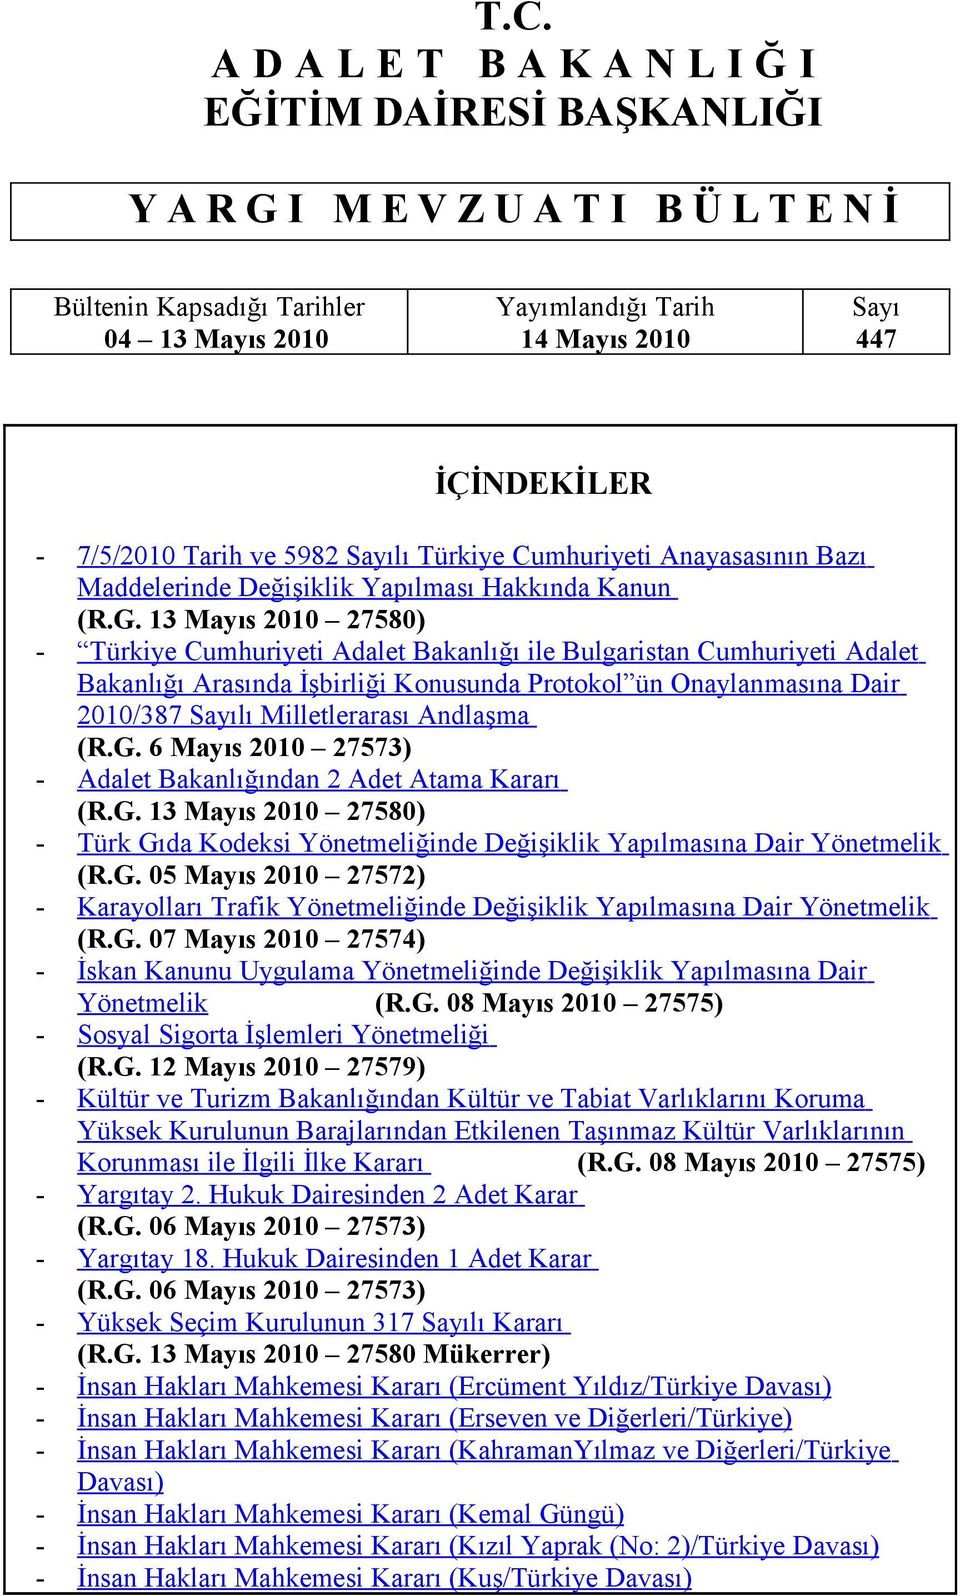 13 Mayıs 2010 27580) - Türkiye Cumhuriyeti Adalet Bakanlığı ile Bulgaristan Cumhuriyeti Adalet Bakanlığı Arasında İşbirliği Konusunda Protokol ün Onaylanmasına Dair 2010/387 Sayılı Milletlerarası